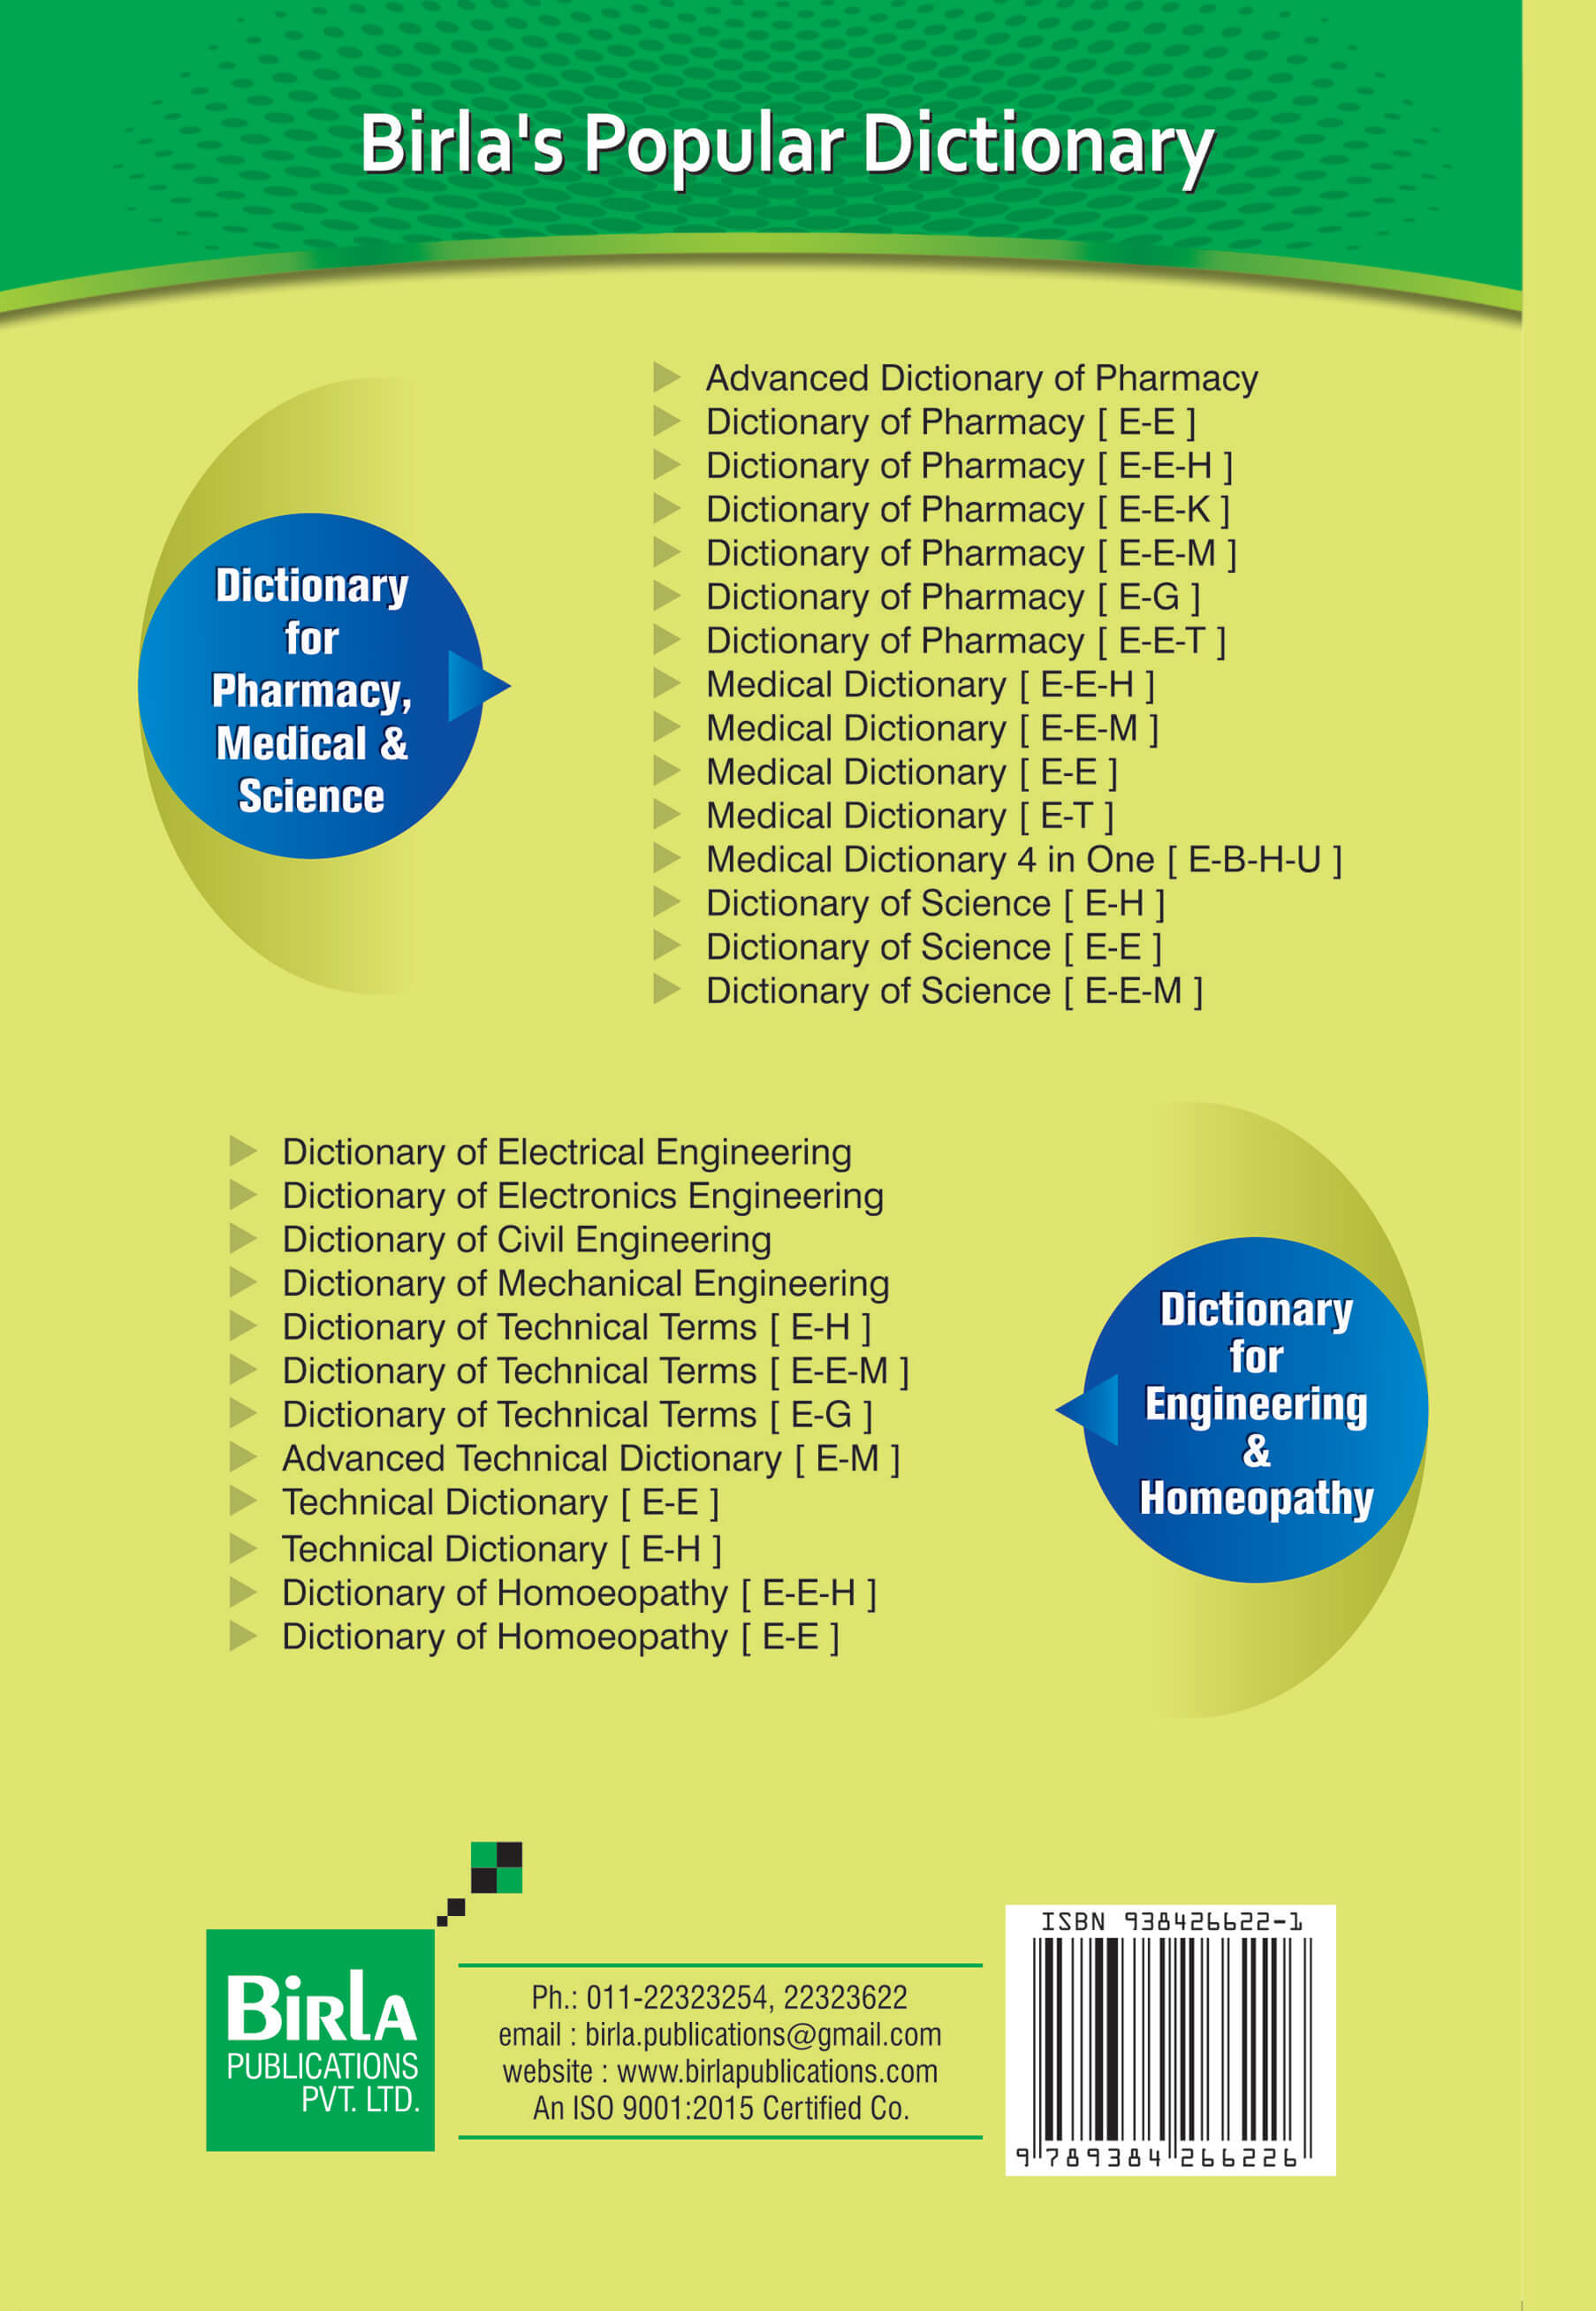 DICTIONARY OF SCIENCE [E-E-M]